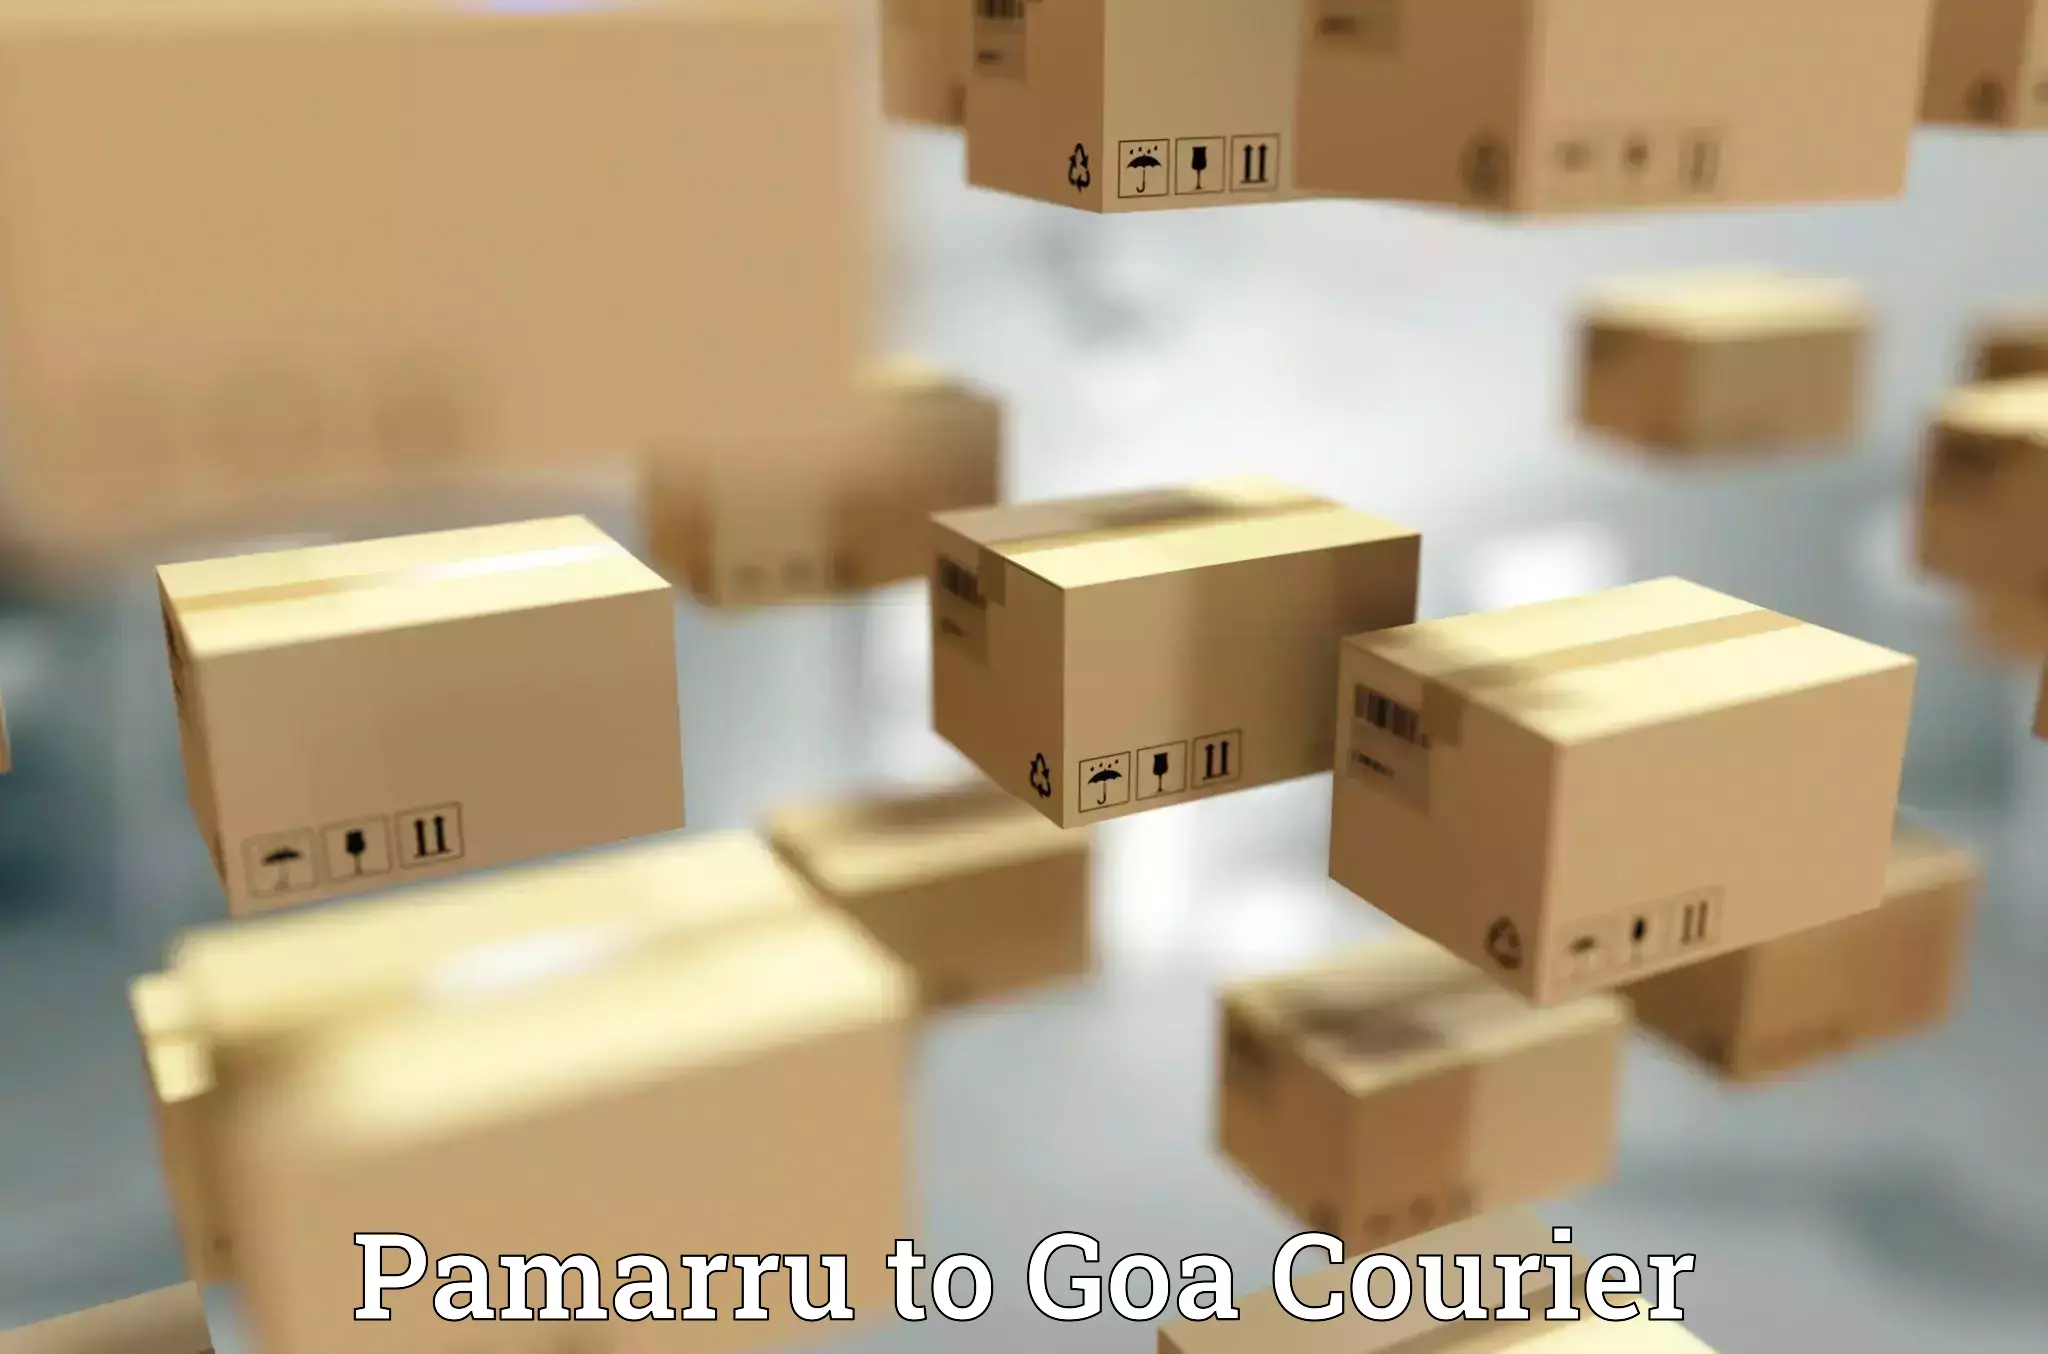 Global shipping solutions Pamarru to Panaji